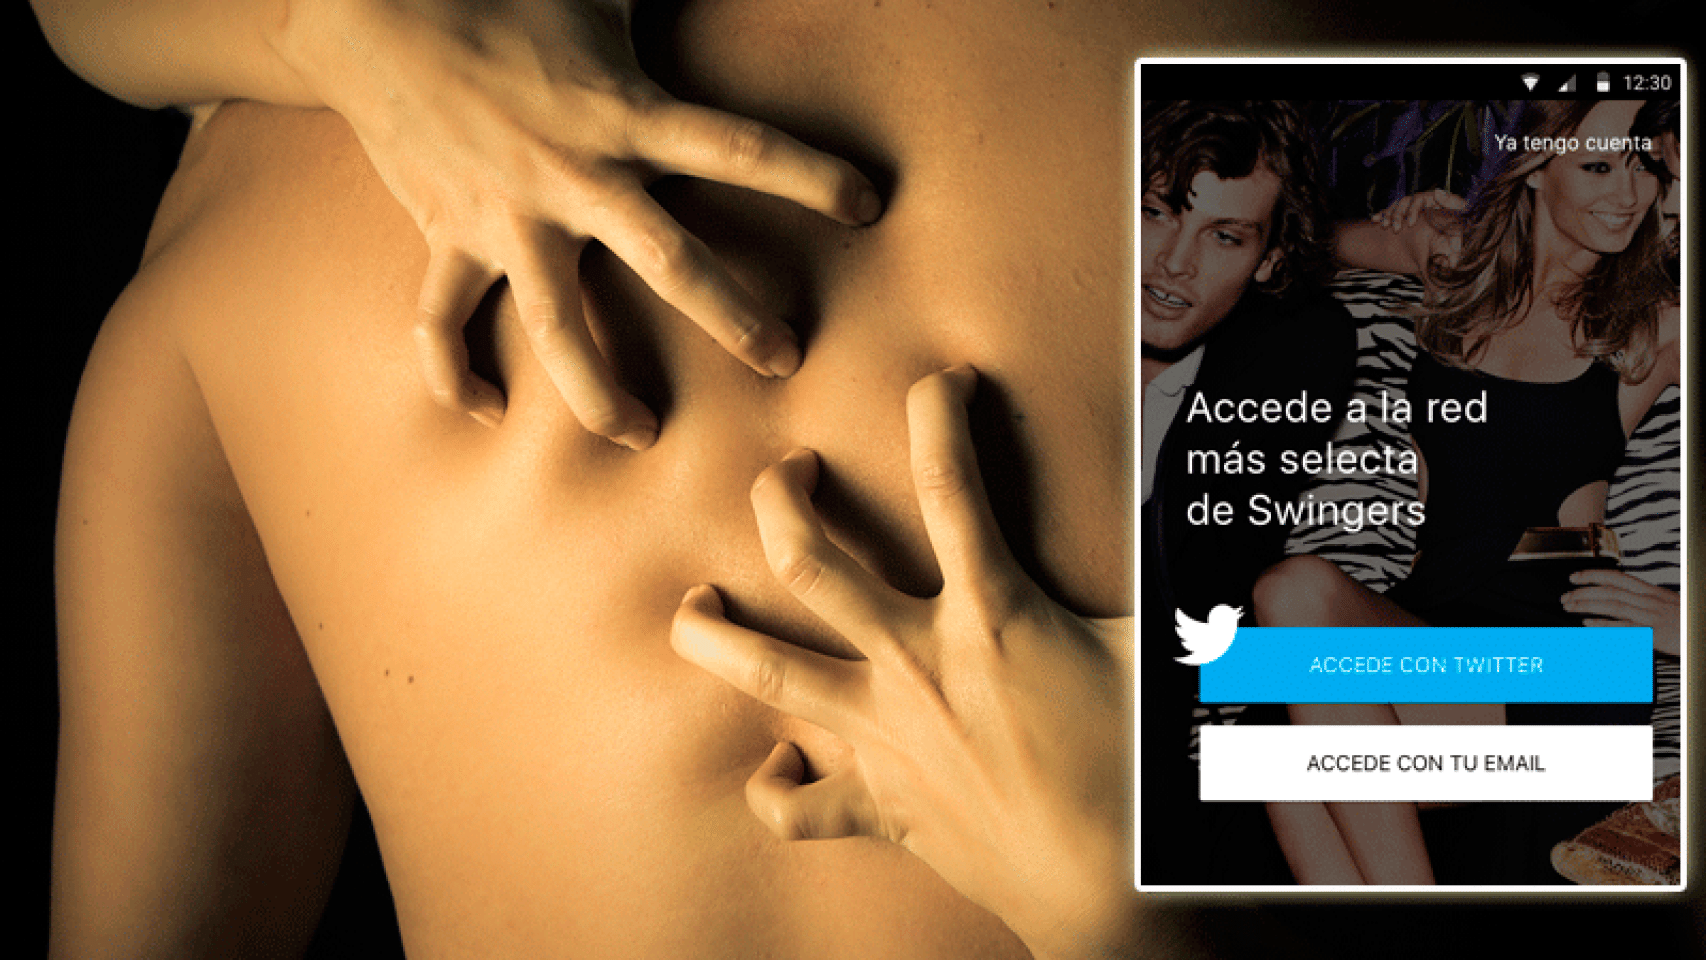 Swingers una empresa española crea la primera app para cambiar pareja imagen